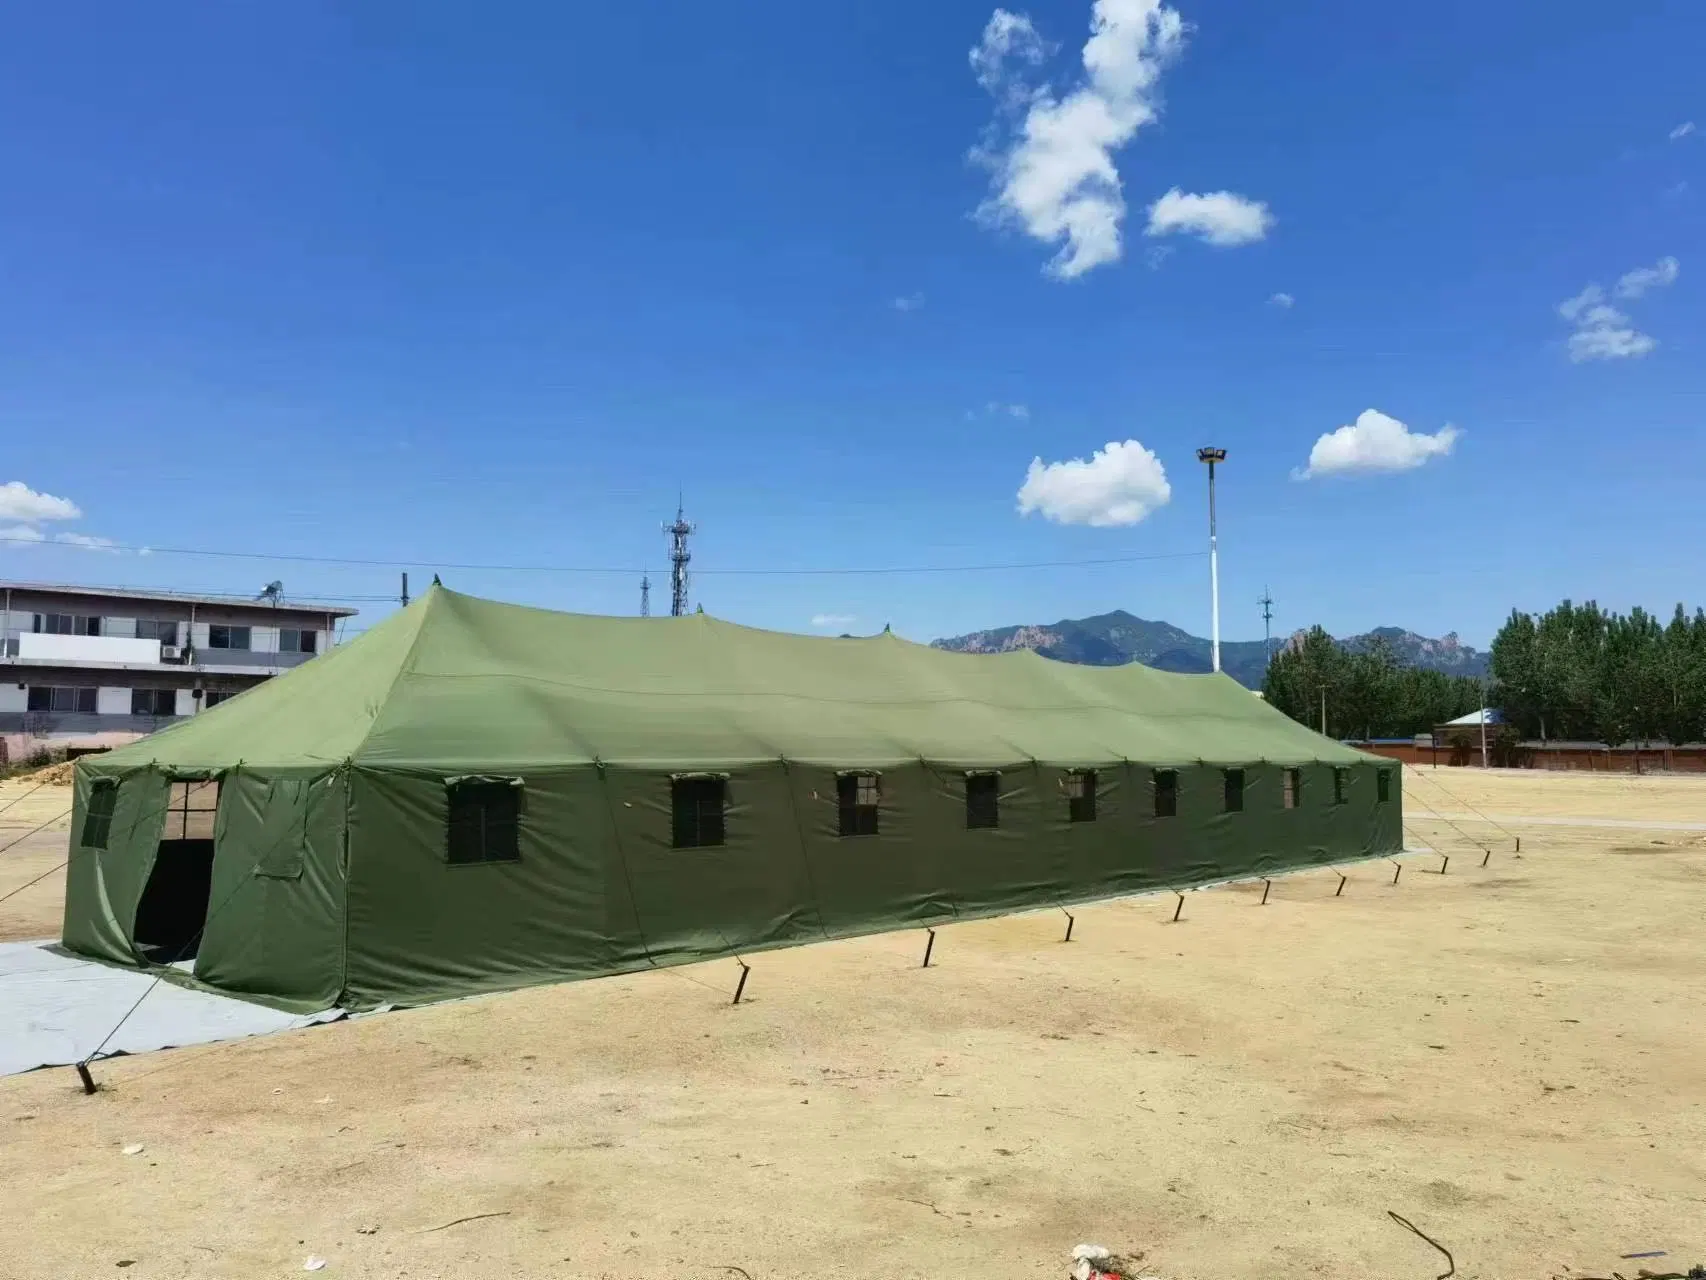 خيمة الجيش الماركي - خيمة اللاجئين - خيمة التمويه - خيمة الإغاثة من الأمم المتحدة - خيمة عسكرية